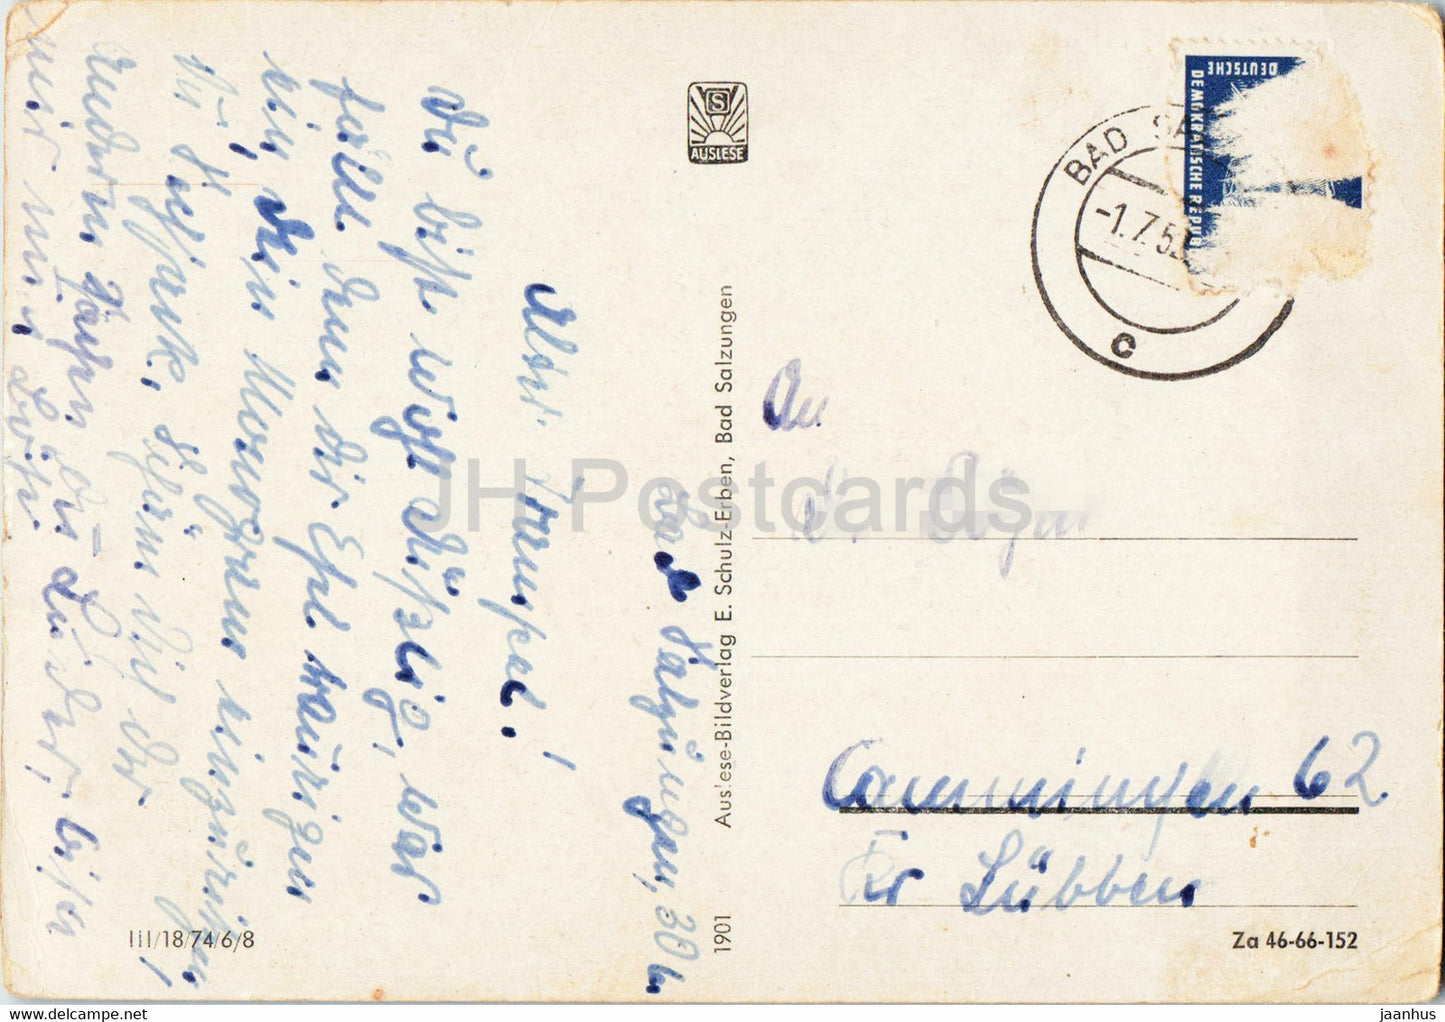 Bad Salzungen - Freiluftinhalation im Gradierwerk - carte postale ancienne - années 1950 - Allemagne DDR - utilisé